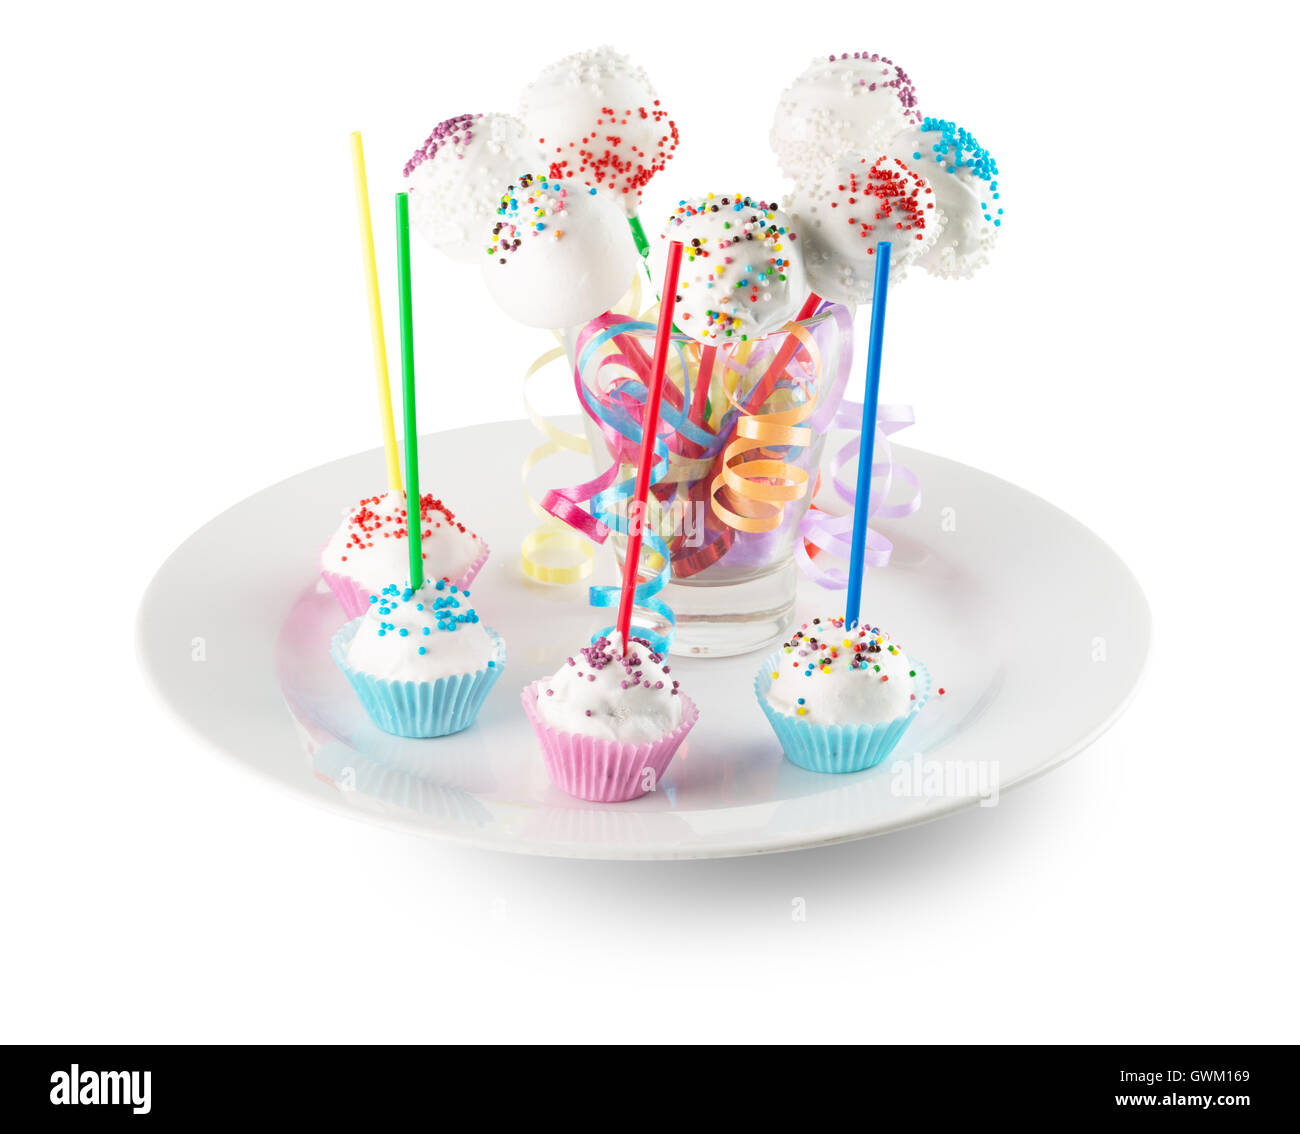 Pop-Bonbons auf weißen Teller auf dem weißen Hintergrund isoliert. Stockfoto